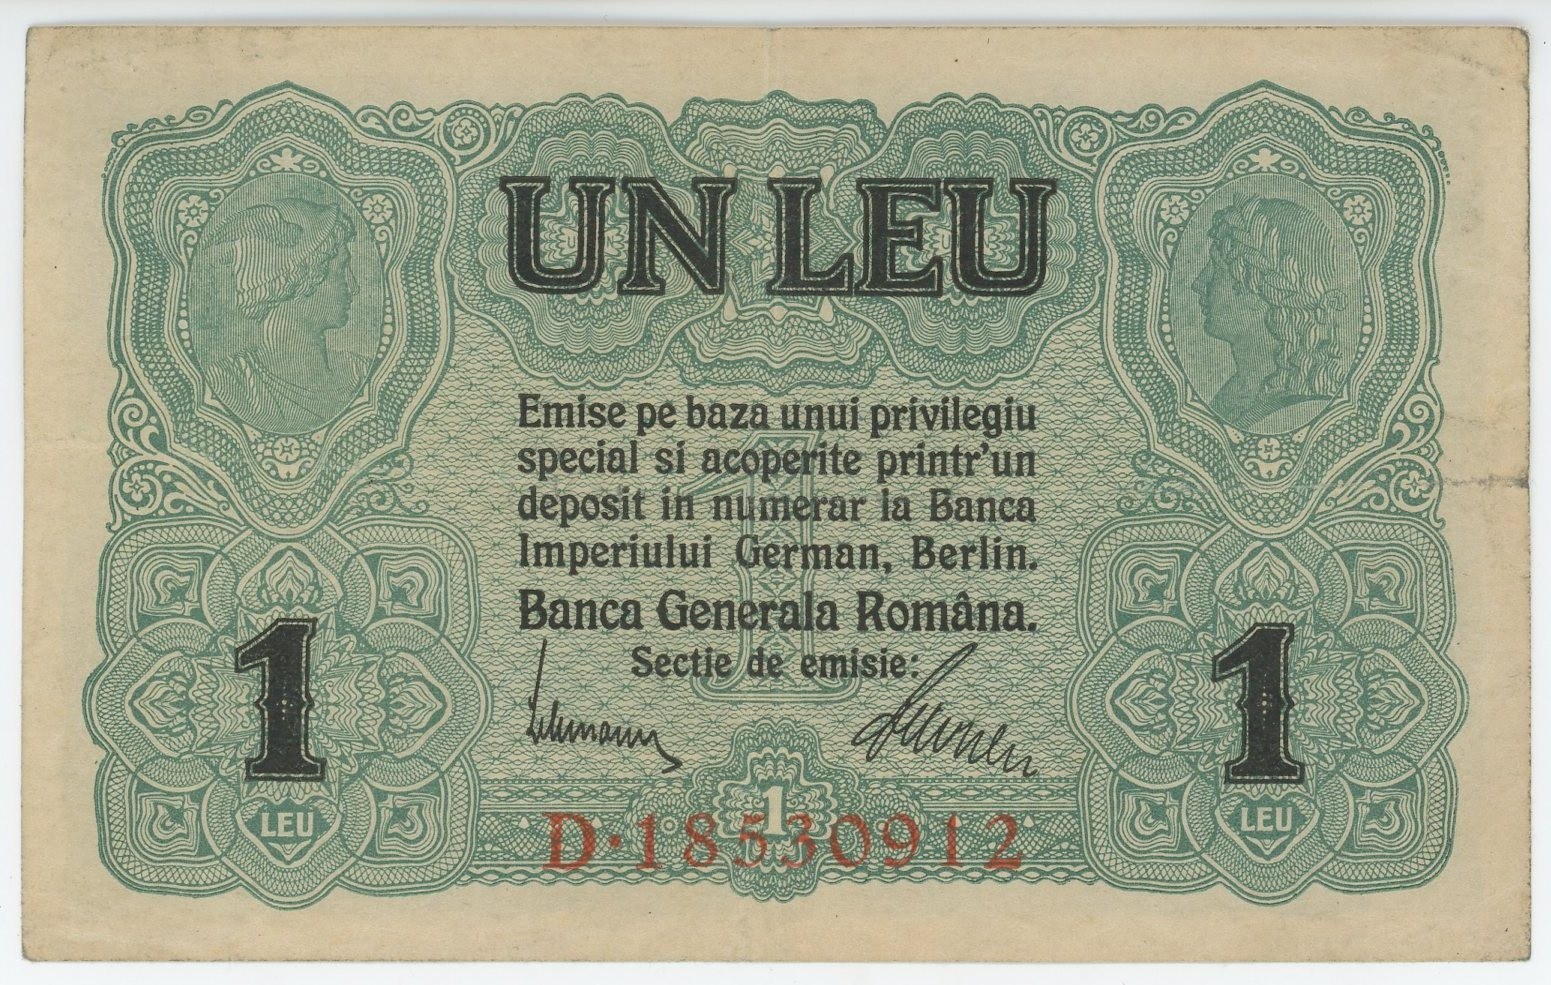 Romania 5 Lei 1952 Specimen